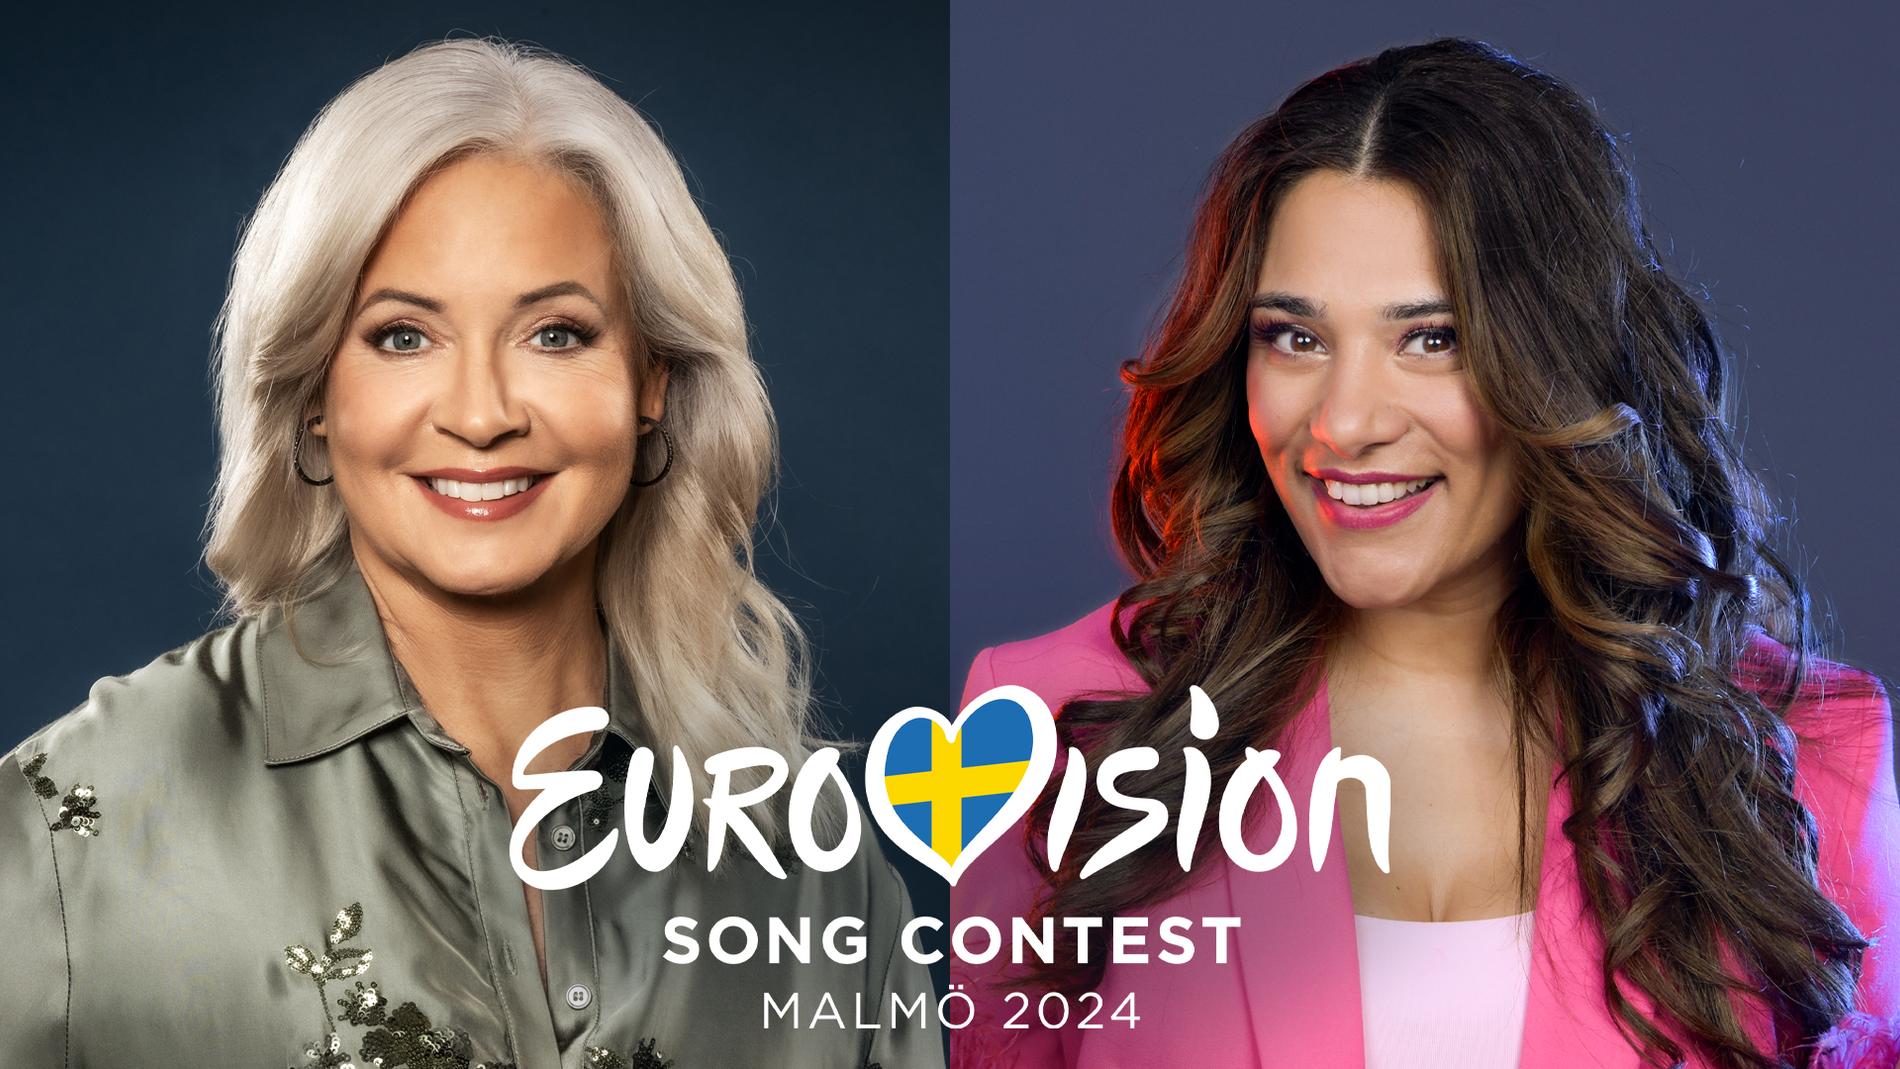 Pernilla Månsson Colt och Farah Abadi programleder lottningen av Eurovision Song Contest 2024 s